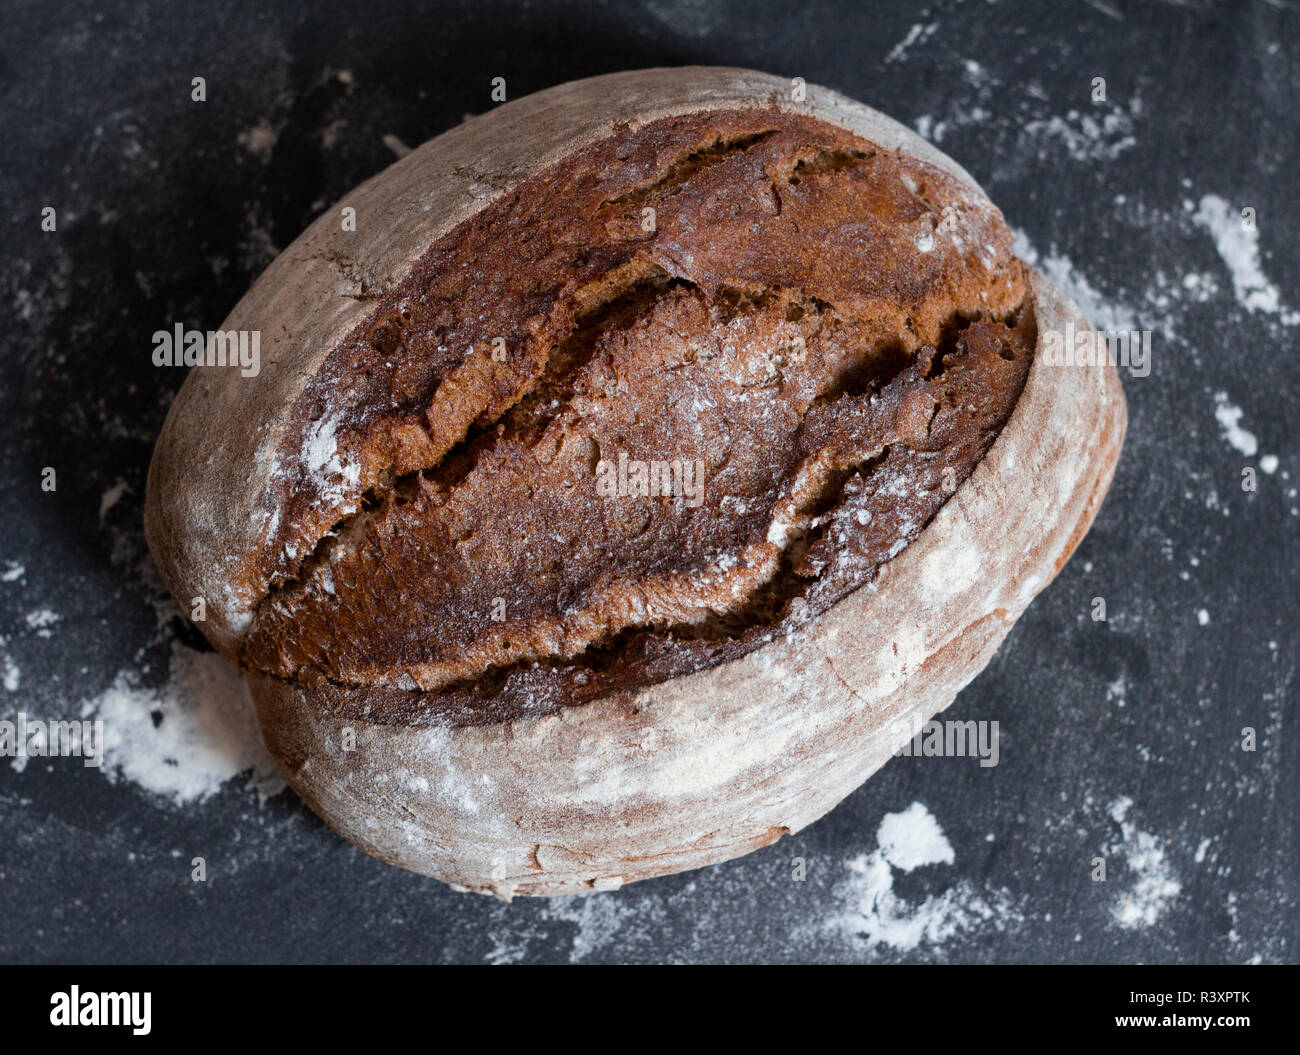 Freshly baked homemade artisan bread loaf Stock Photo